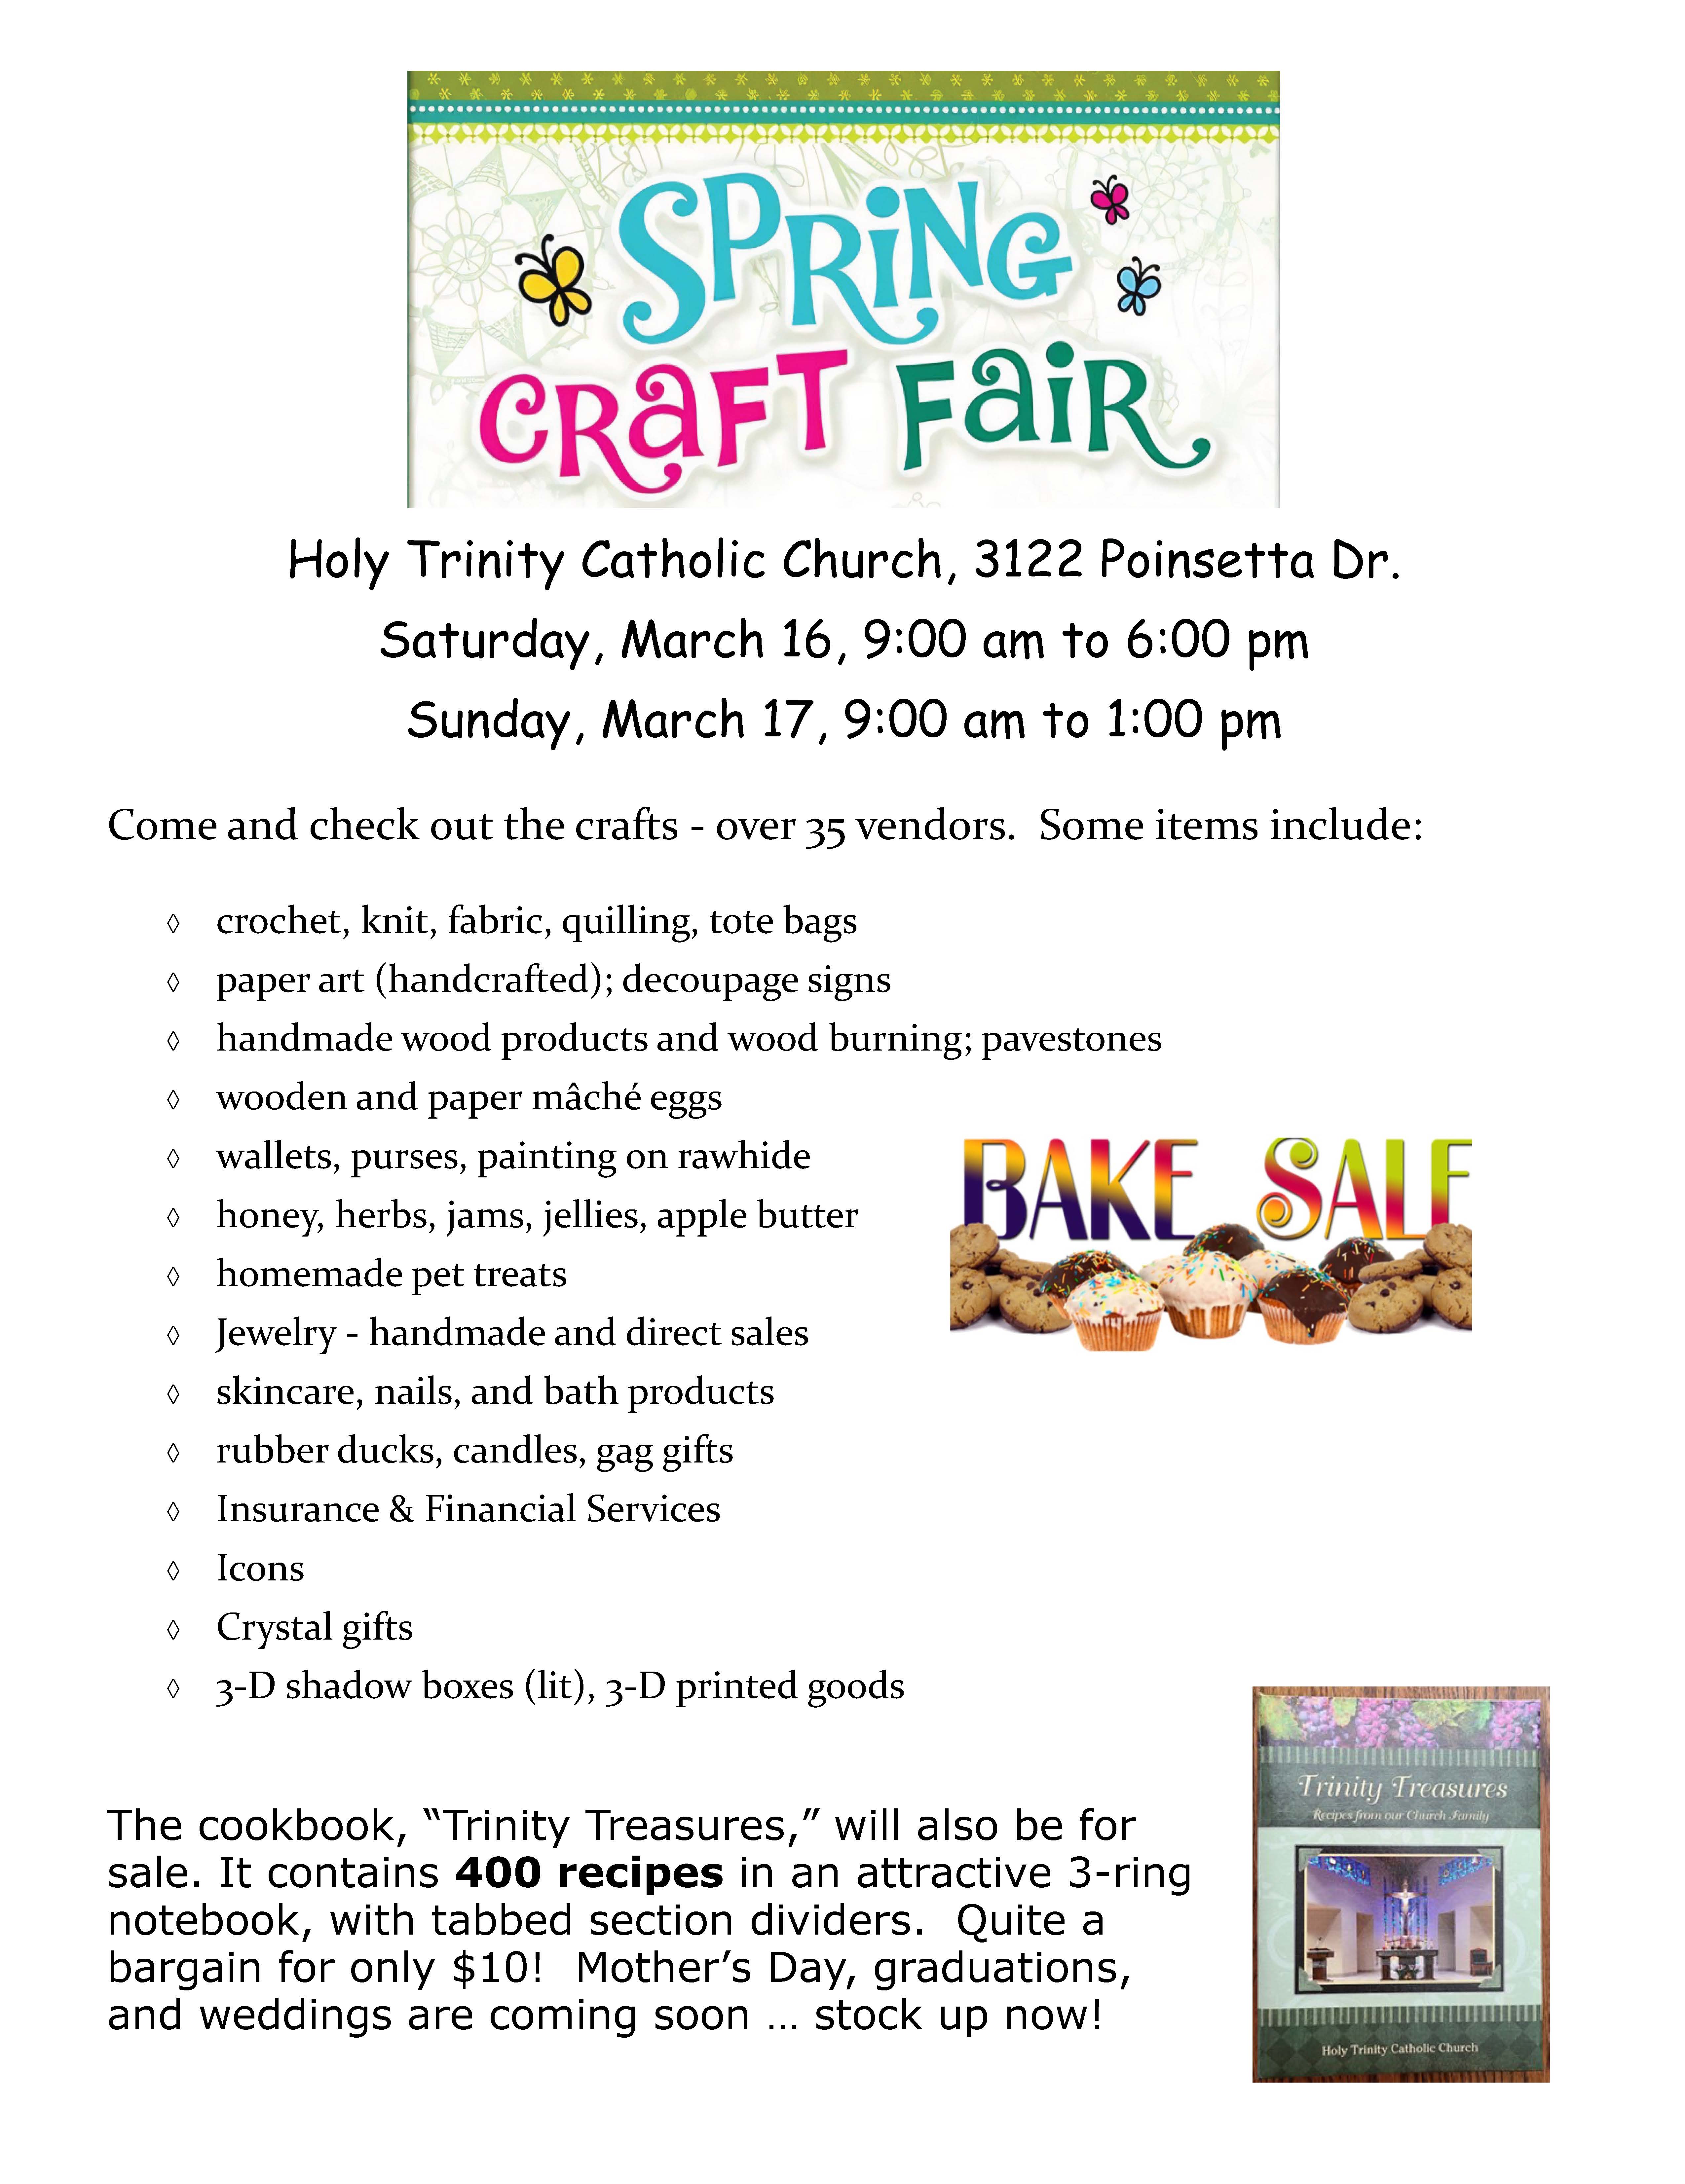 Holy Trinity Spring Craft Fair